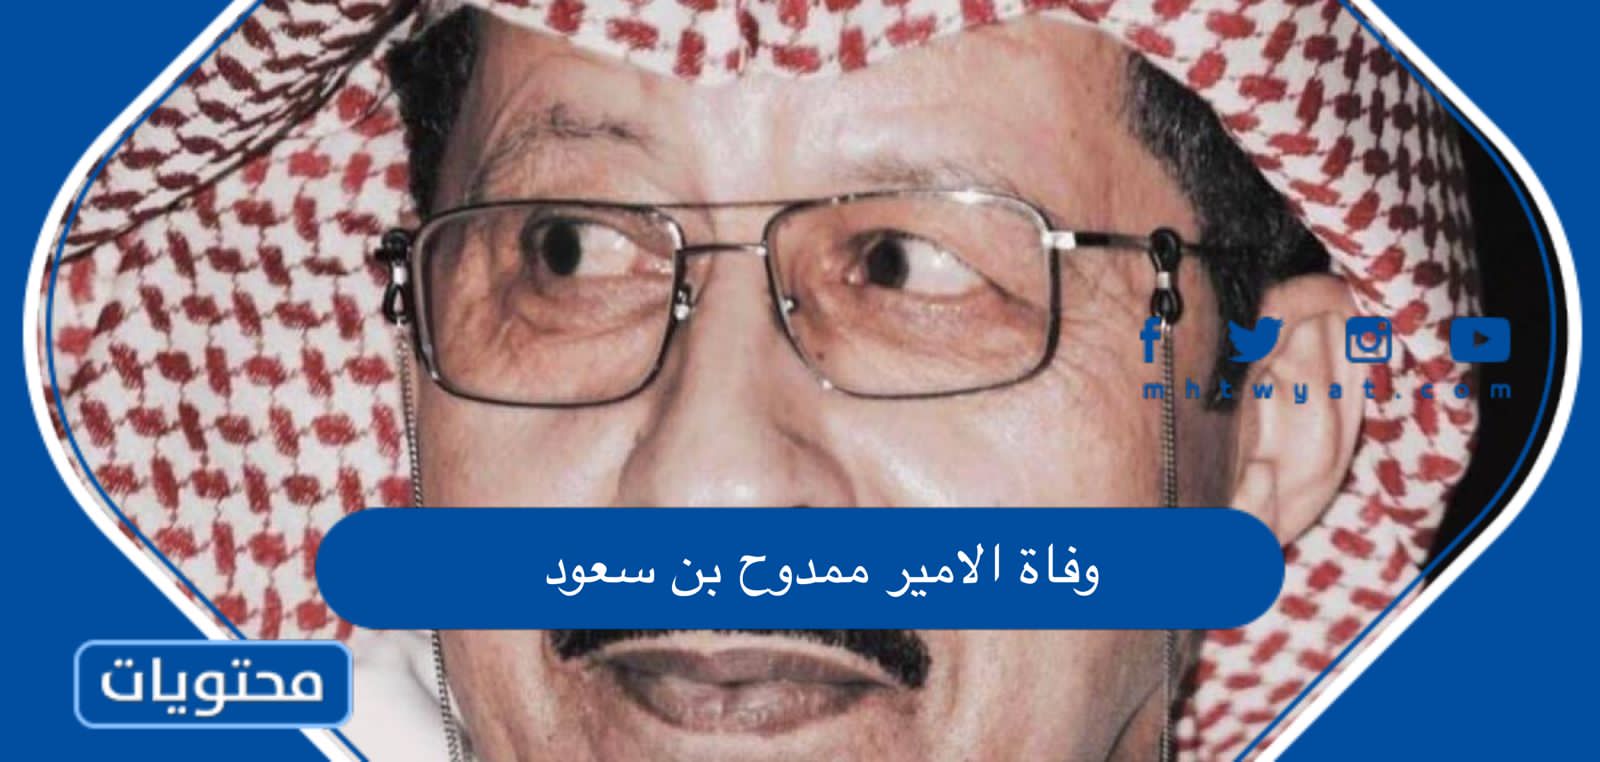 وفاة الامير ممدوح بن سعود بن عبدالعزيز “السبب والتفاصيل”